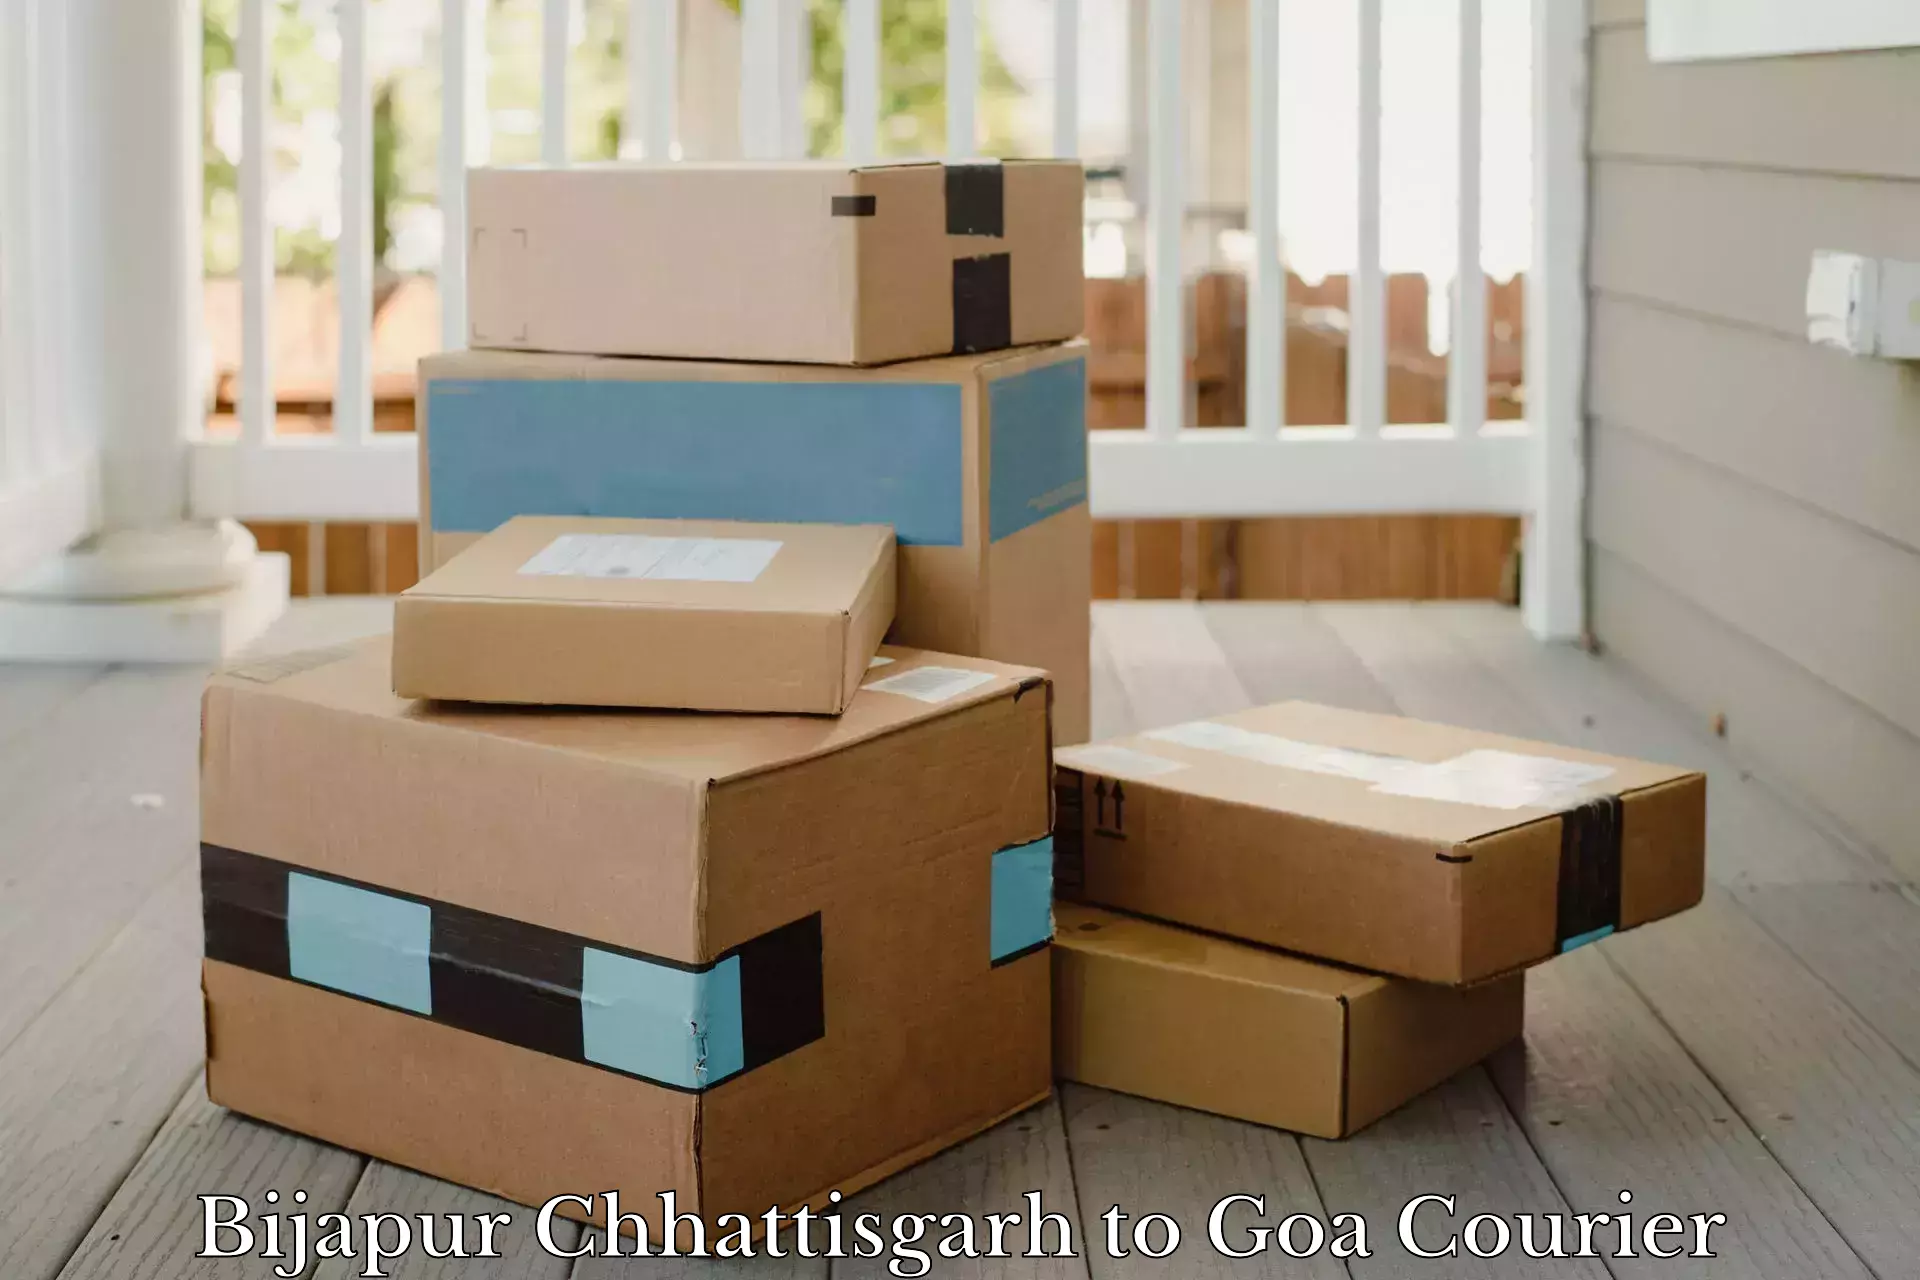 Easy access courier services Bijapur Chhattisgarh to Panaji